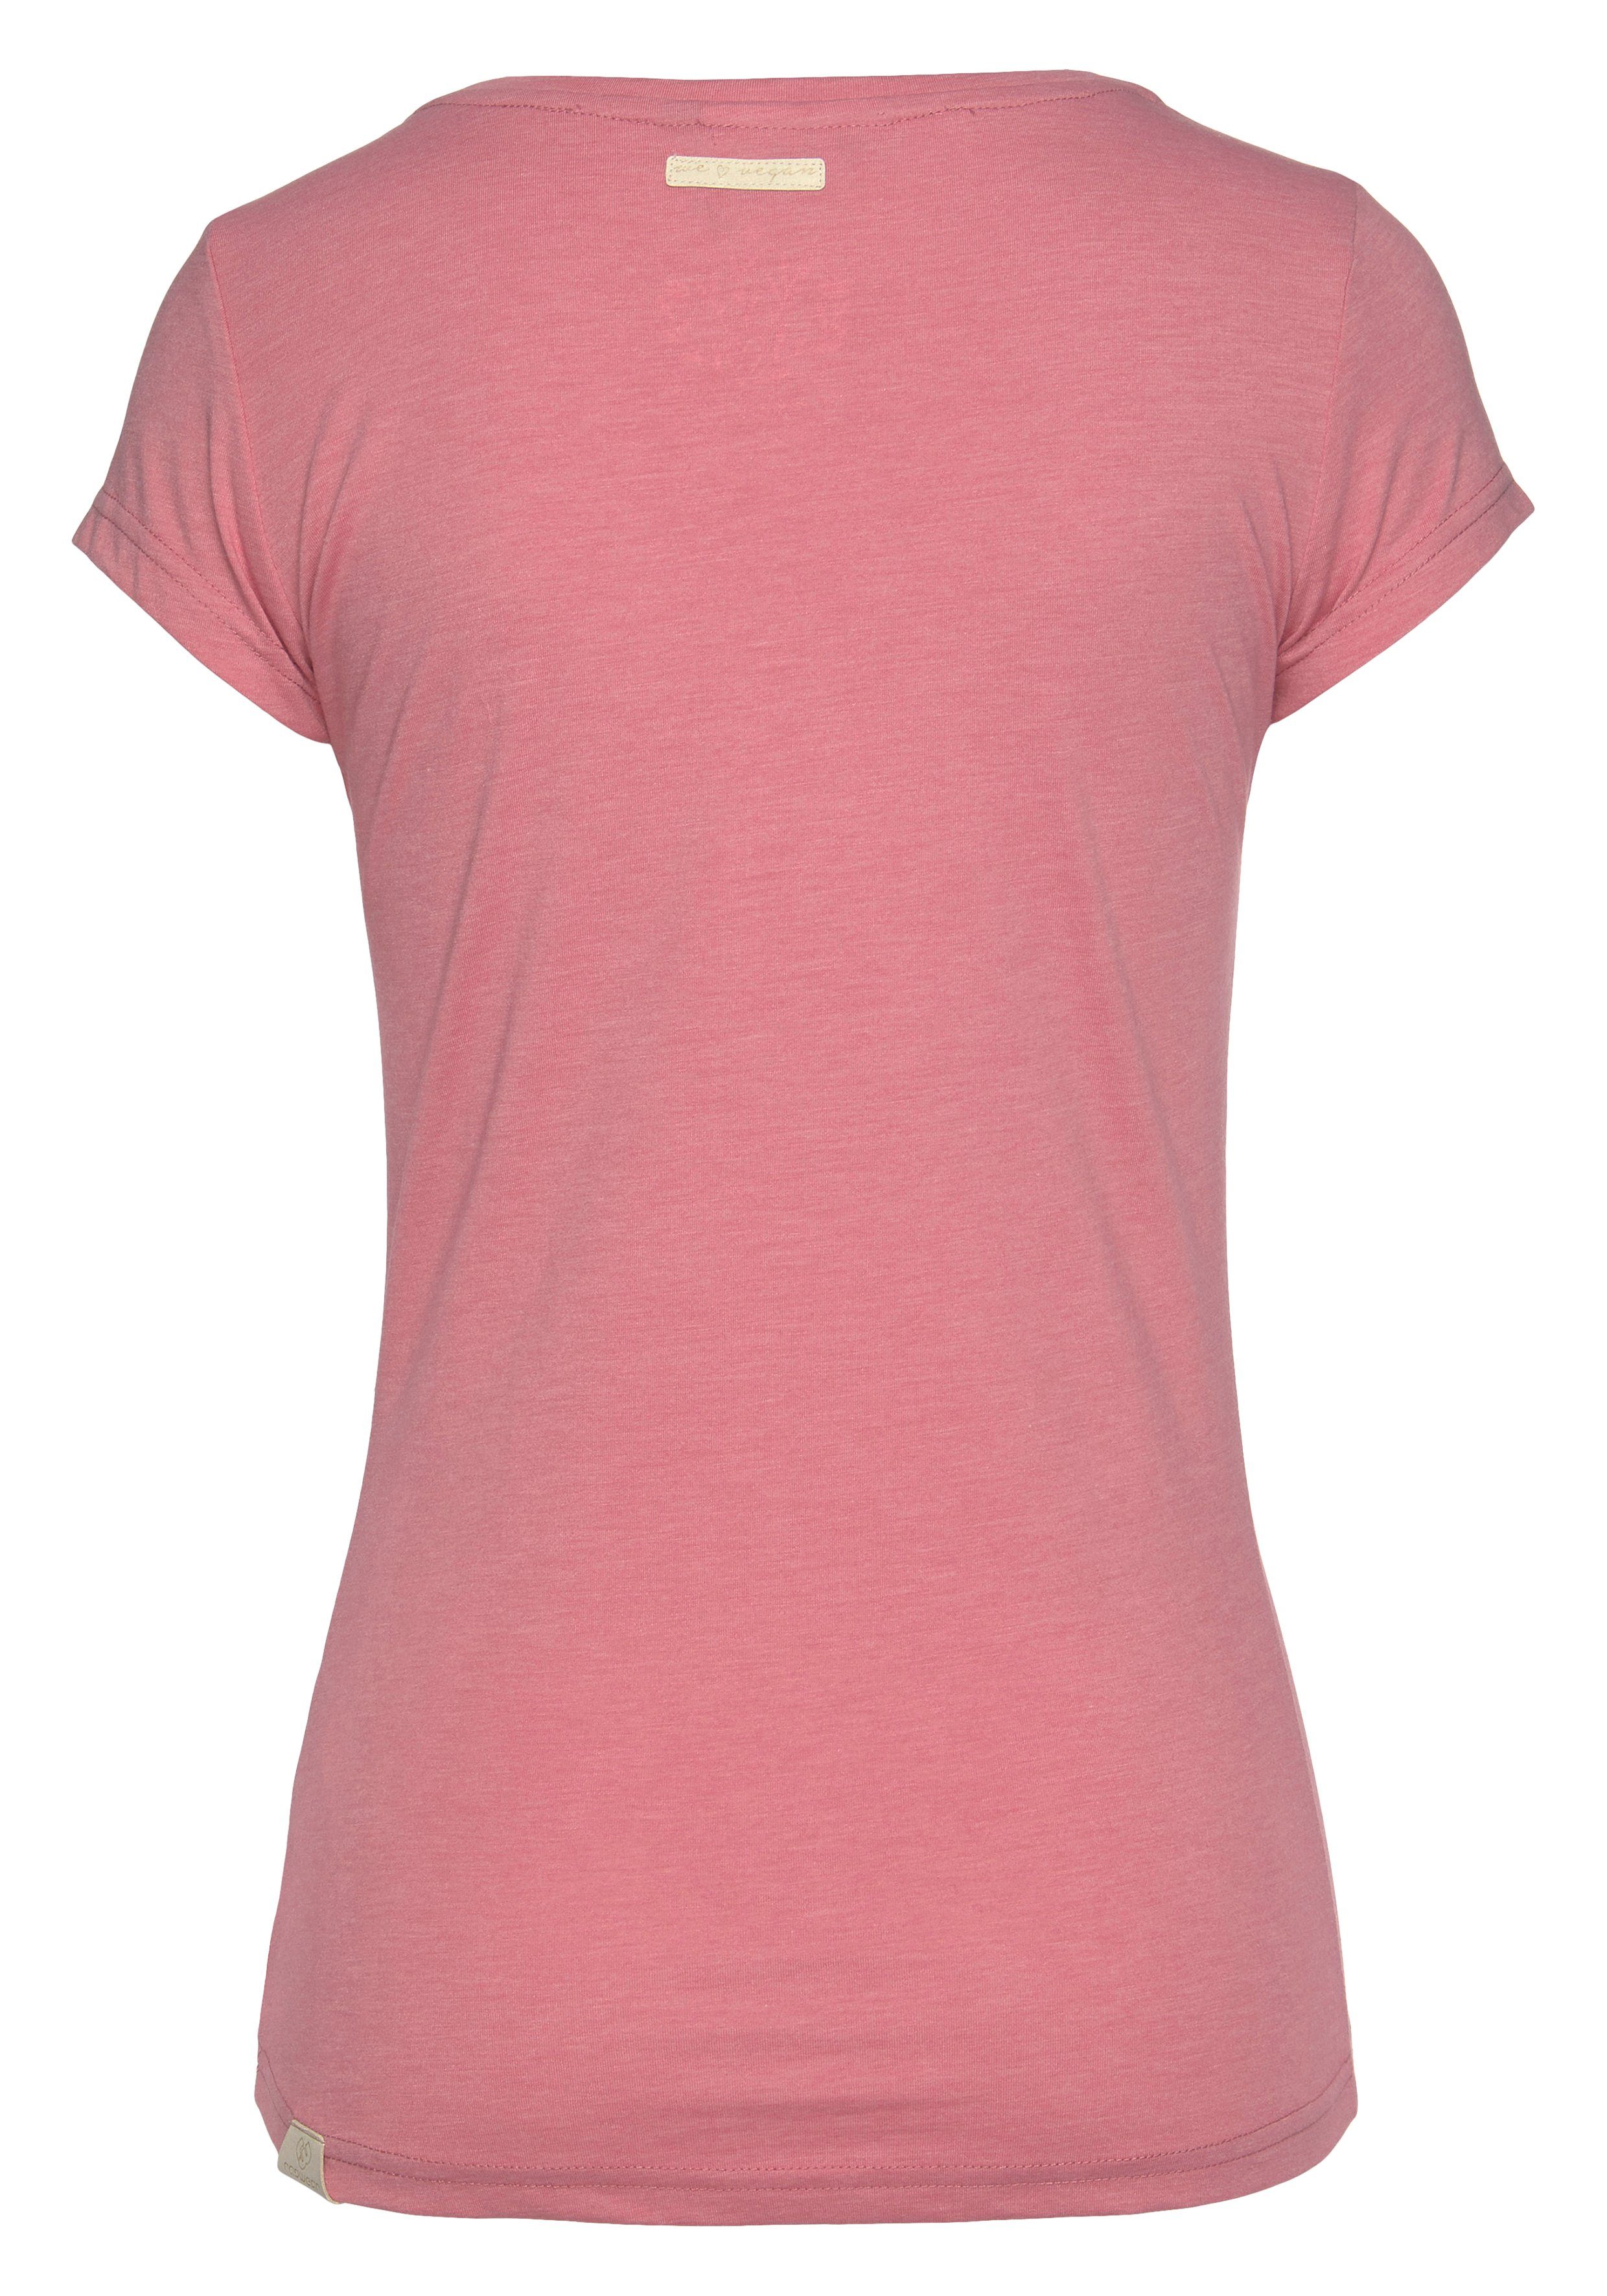 MINT Holzoptik natürlicher Logoschriftzug und mit Ragwear pink in T-Shirt Zierknopf-Applikation 4043 O